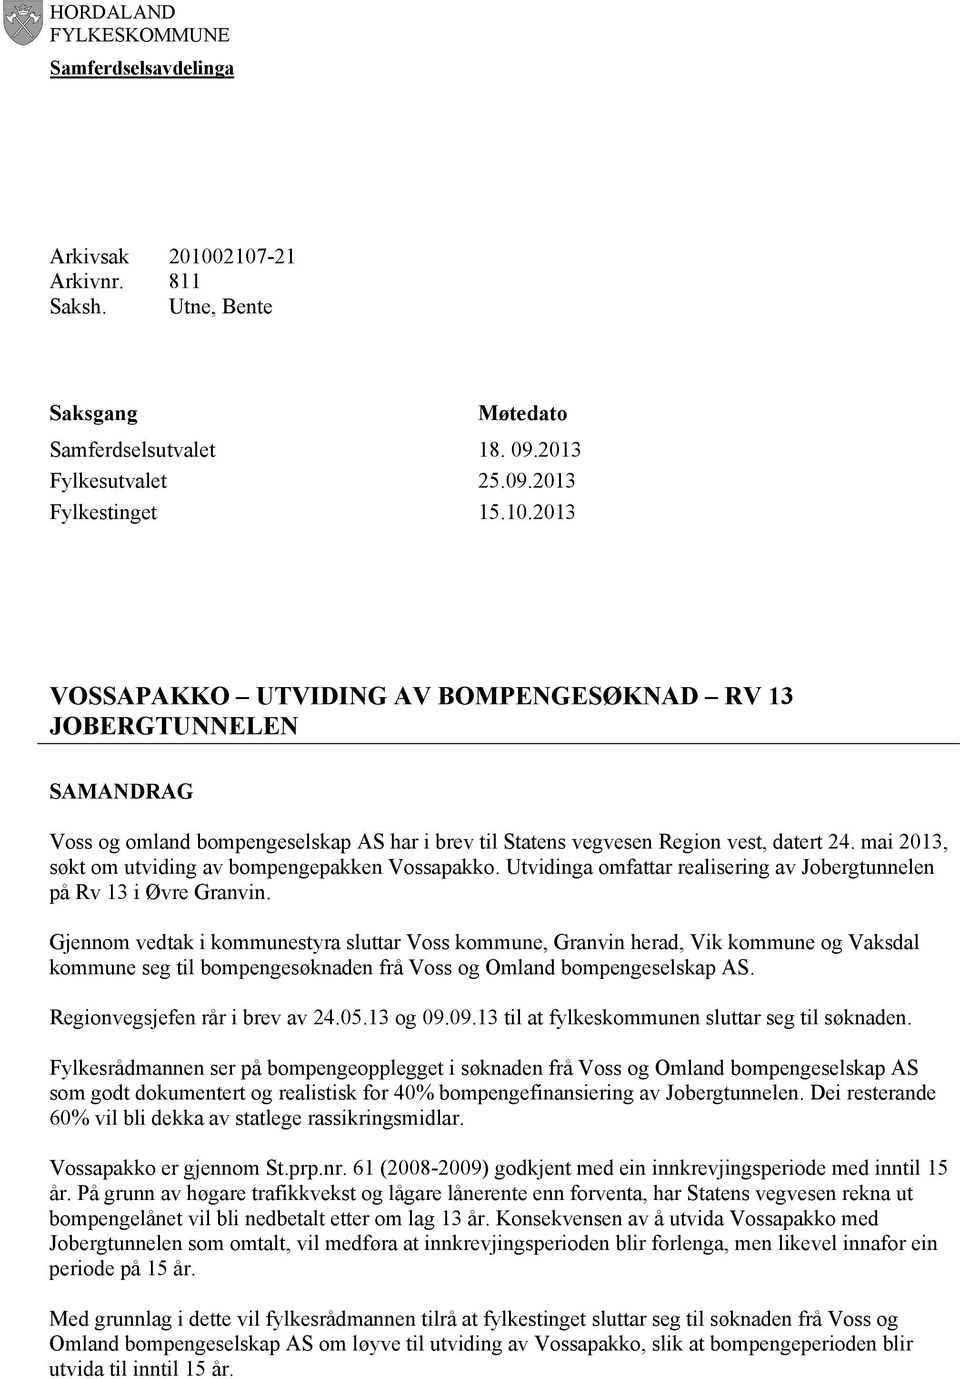 mai 2013, søkt om utviding av bompengepakken Vossapakko. Utvidinga omfattar realisering av Jobergtunnelen på Rv 13 i Øvre Granvin.